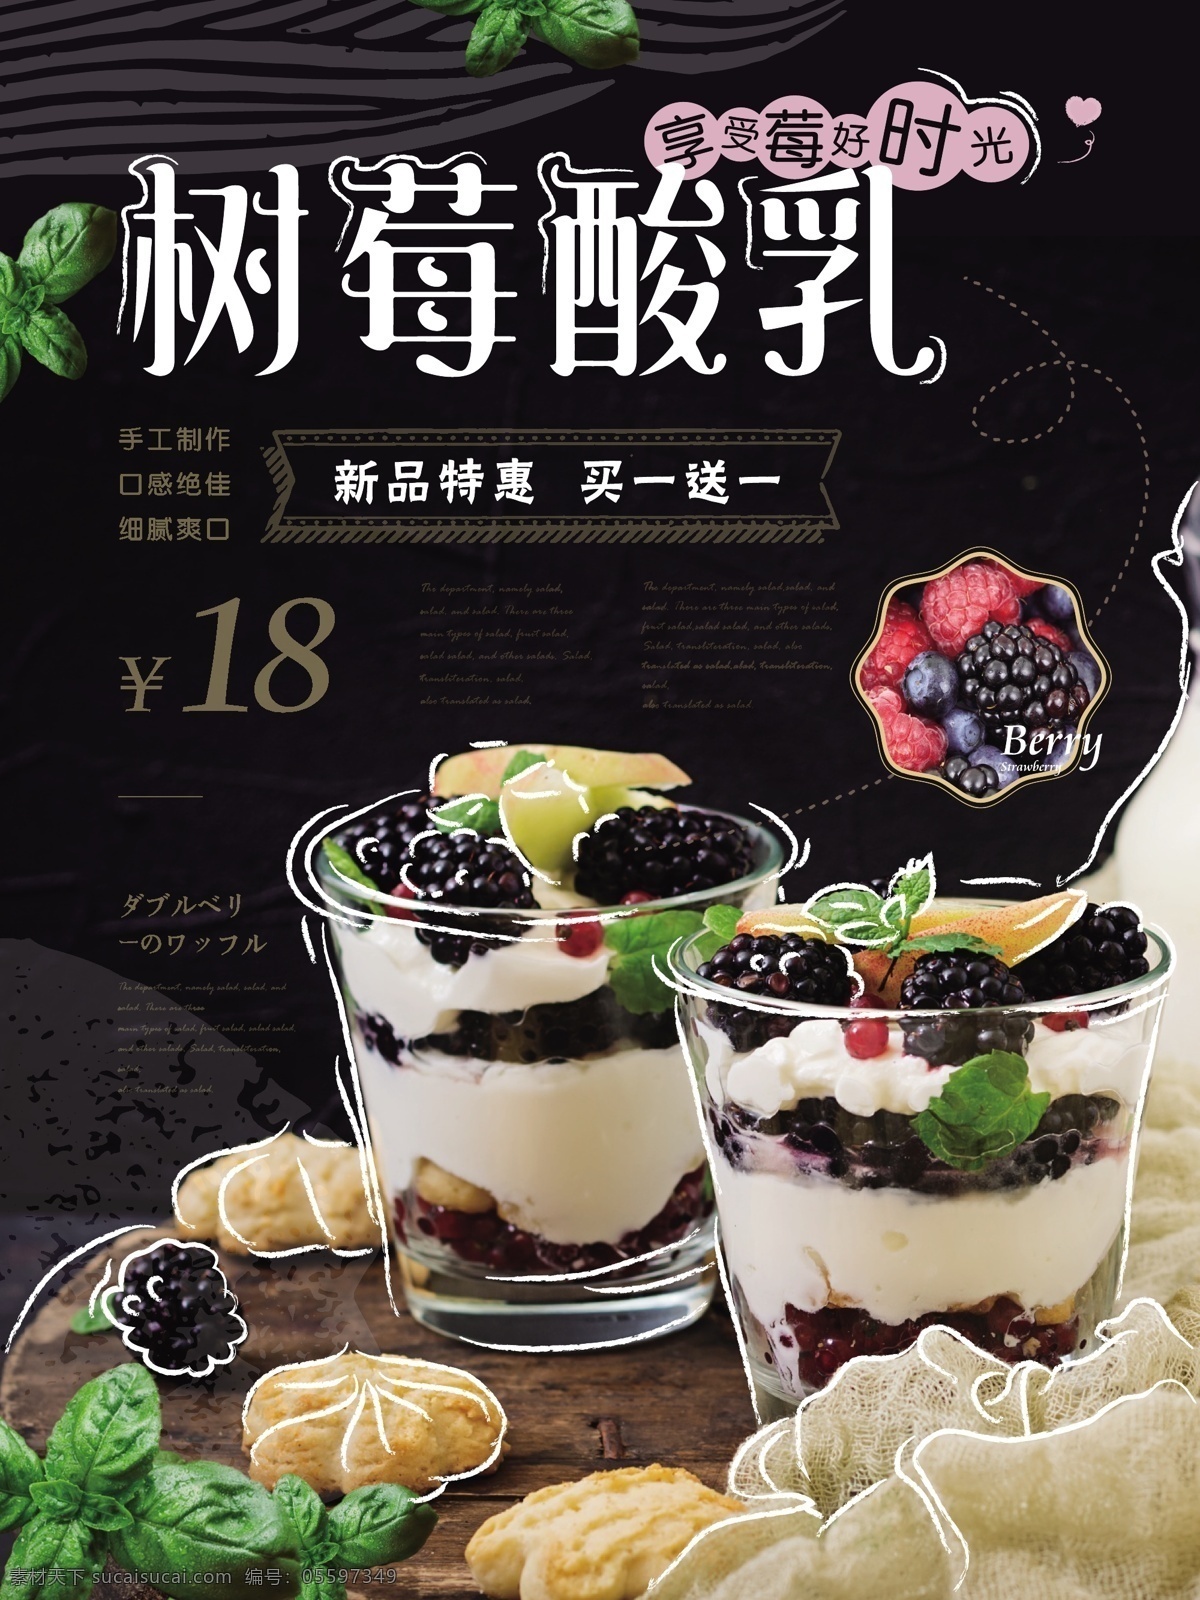 简约 风 树莓 酸乳 促销 海报 酸奶 美食 健康 新品 简约风 树莓酸乳 莓子